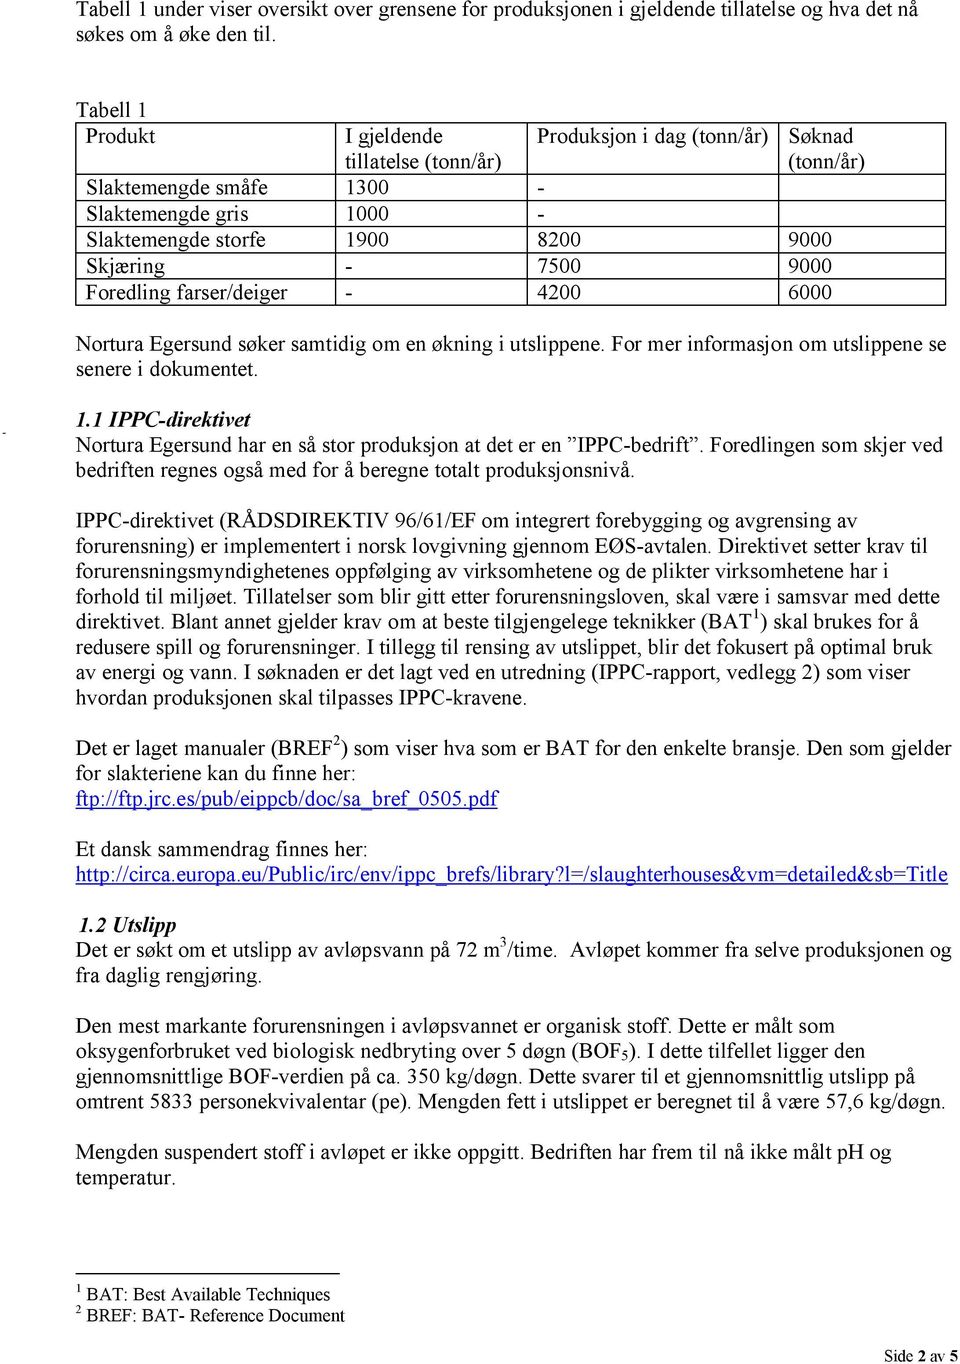 farser/deiger - 4200 6000 Søknad (tonn/år) Nortura Egersund søker samtidig om en økning i utslippene. For mer informasjon om utslippene se senere i dokumentet. 1.